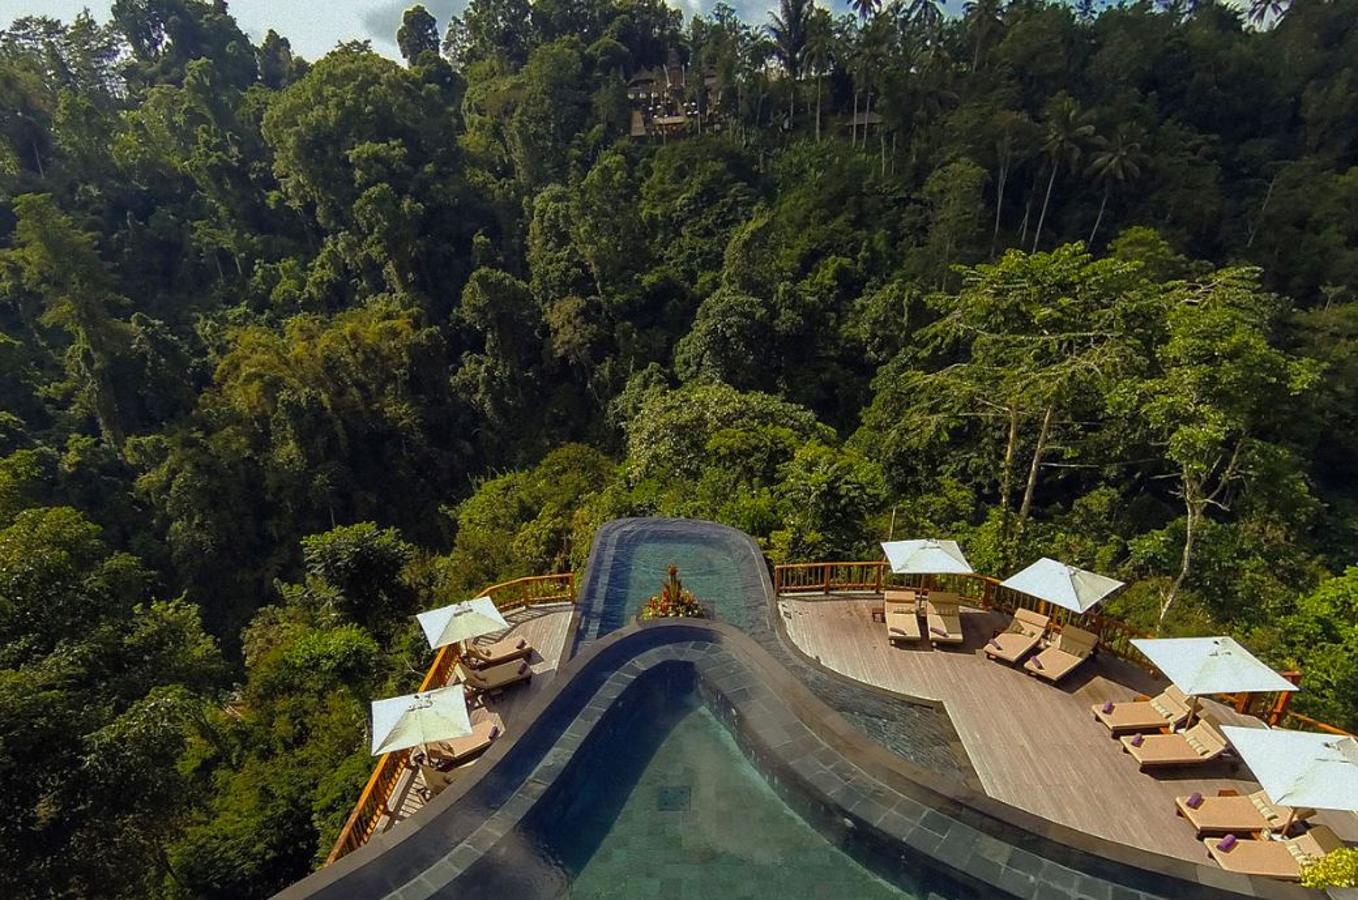 Hanging Gardens, Bali. Su piscina es una auténtica joya arquitectónica. Está hecha en piedra, tiene dos estratos y la sensación espacial que que aporta a quien la disfruta es única